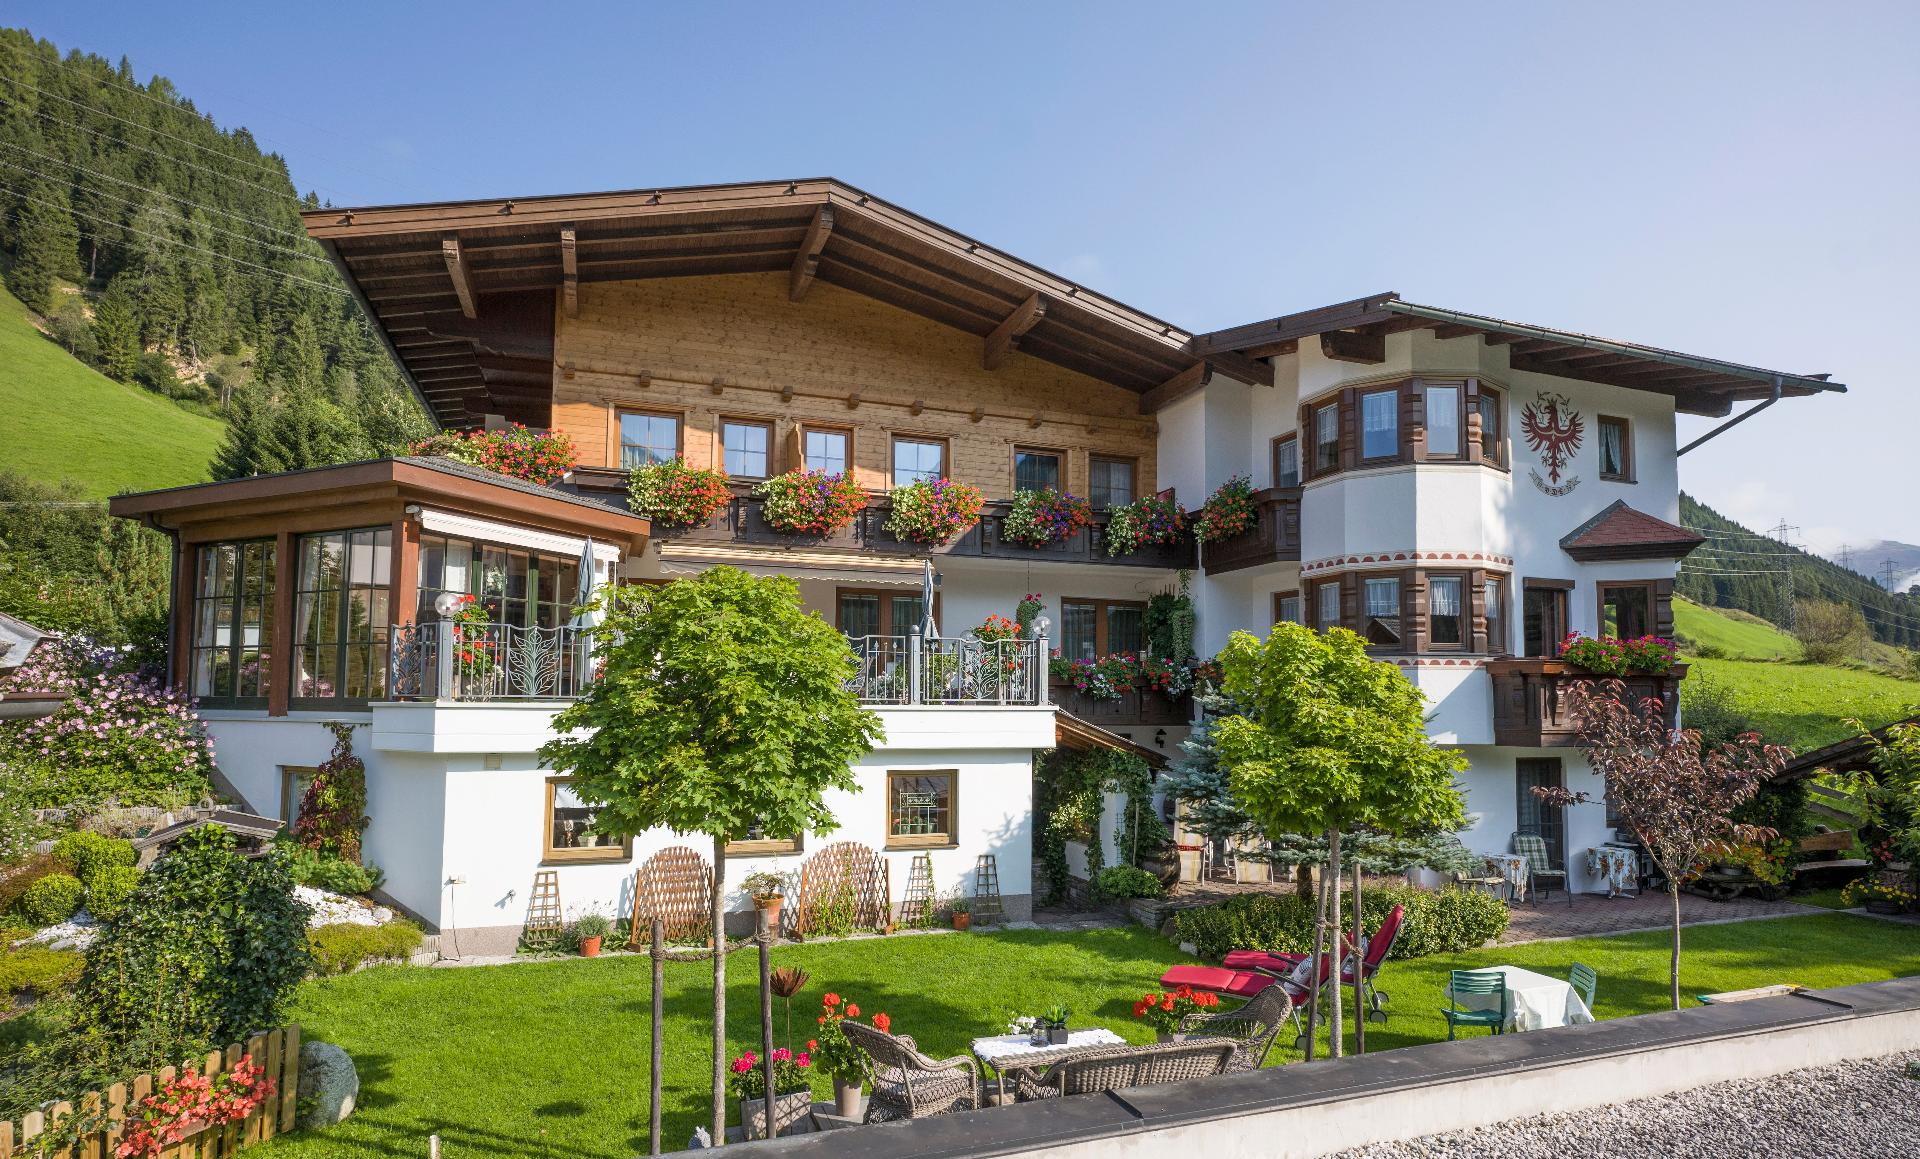 Ferienwohnung für 3 Personen ca. 62 m² i  in Österreich